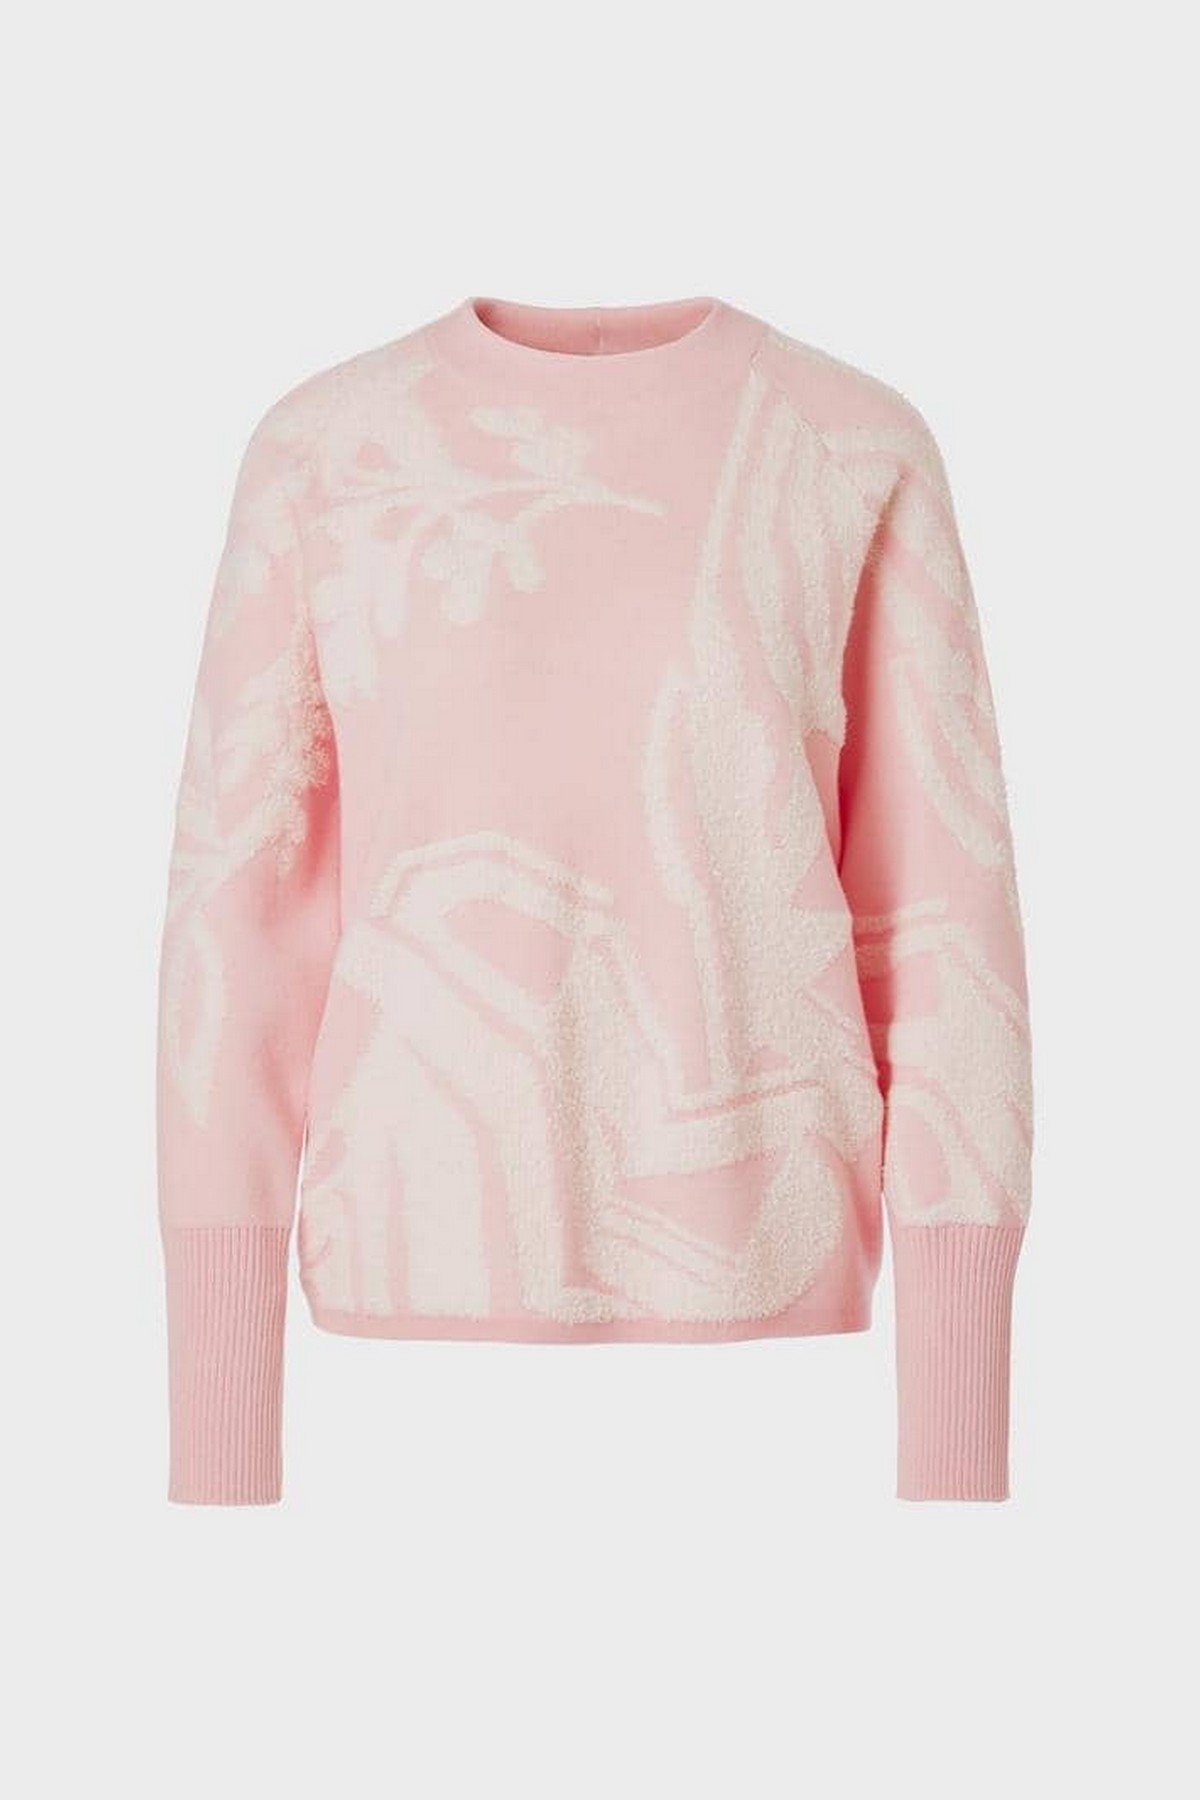 Pull reliefprint wol katoen in de kleur roze wit van het merk Marc Cain